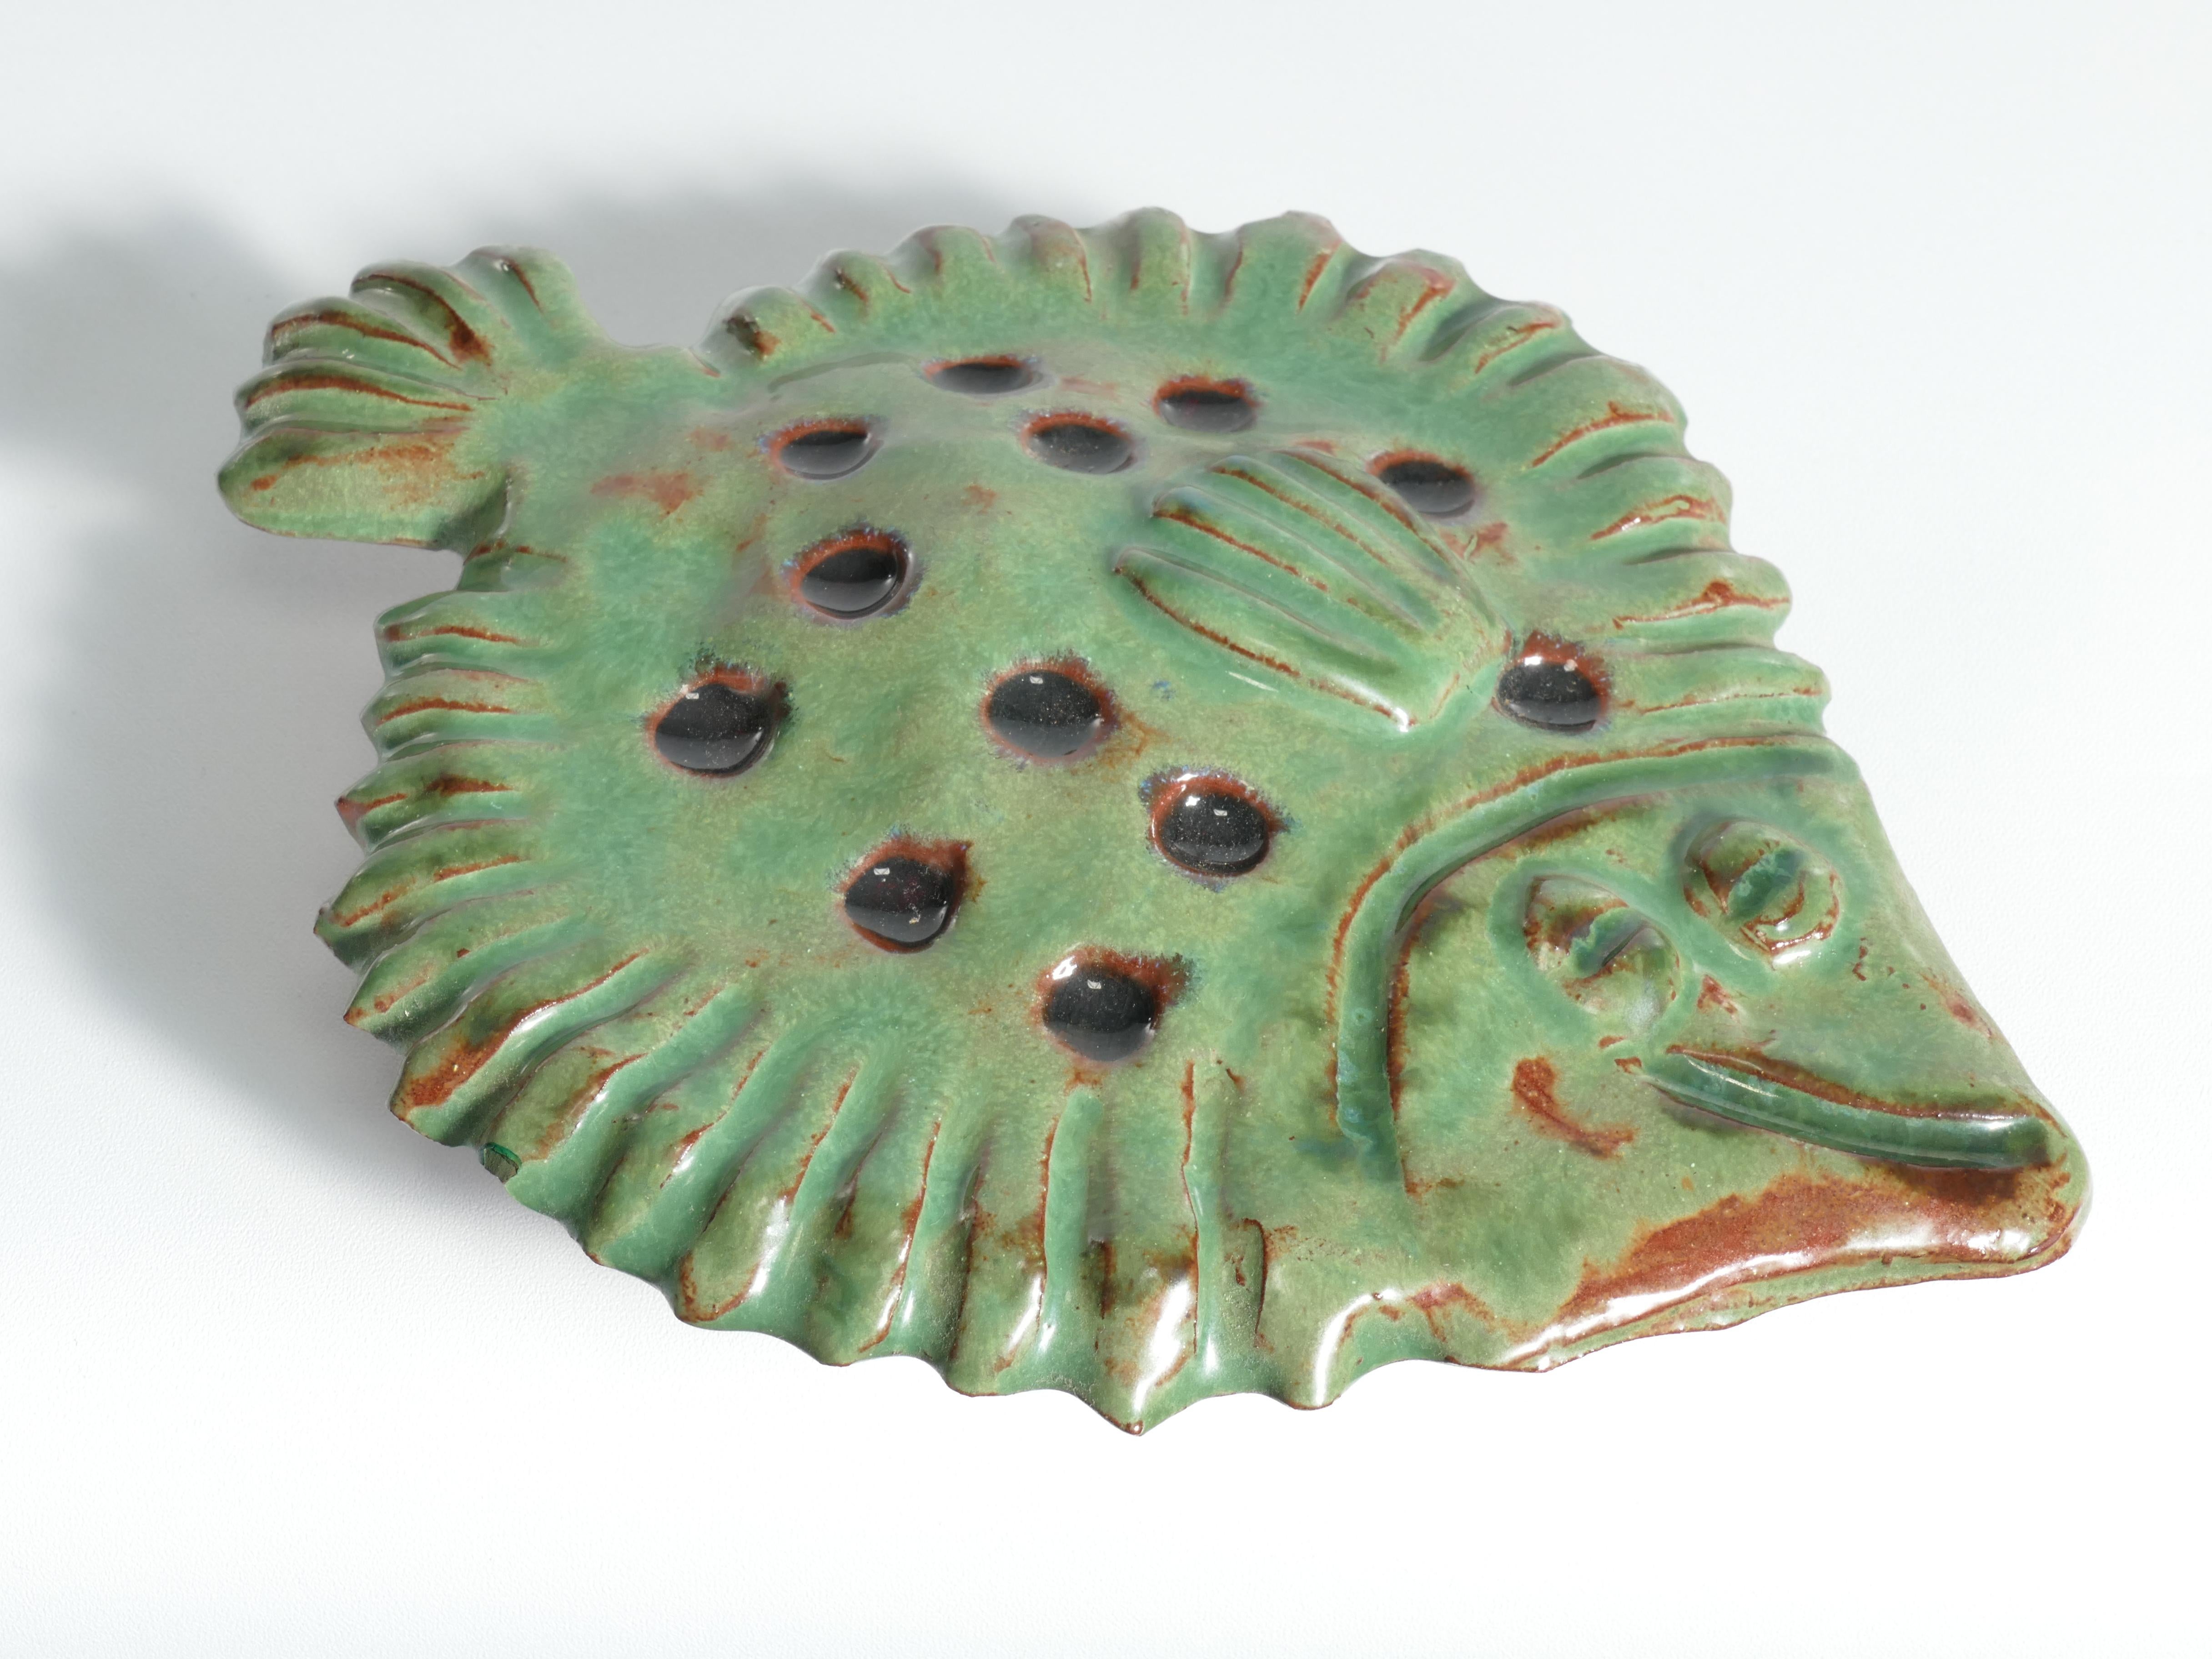 Vintage Green Ceramic Flounder Fish by Allan Hellman, Sweden 1981 For Sale 4